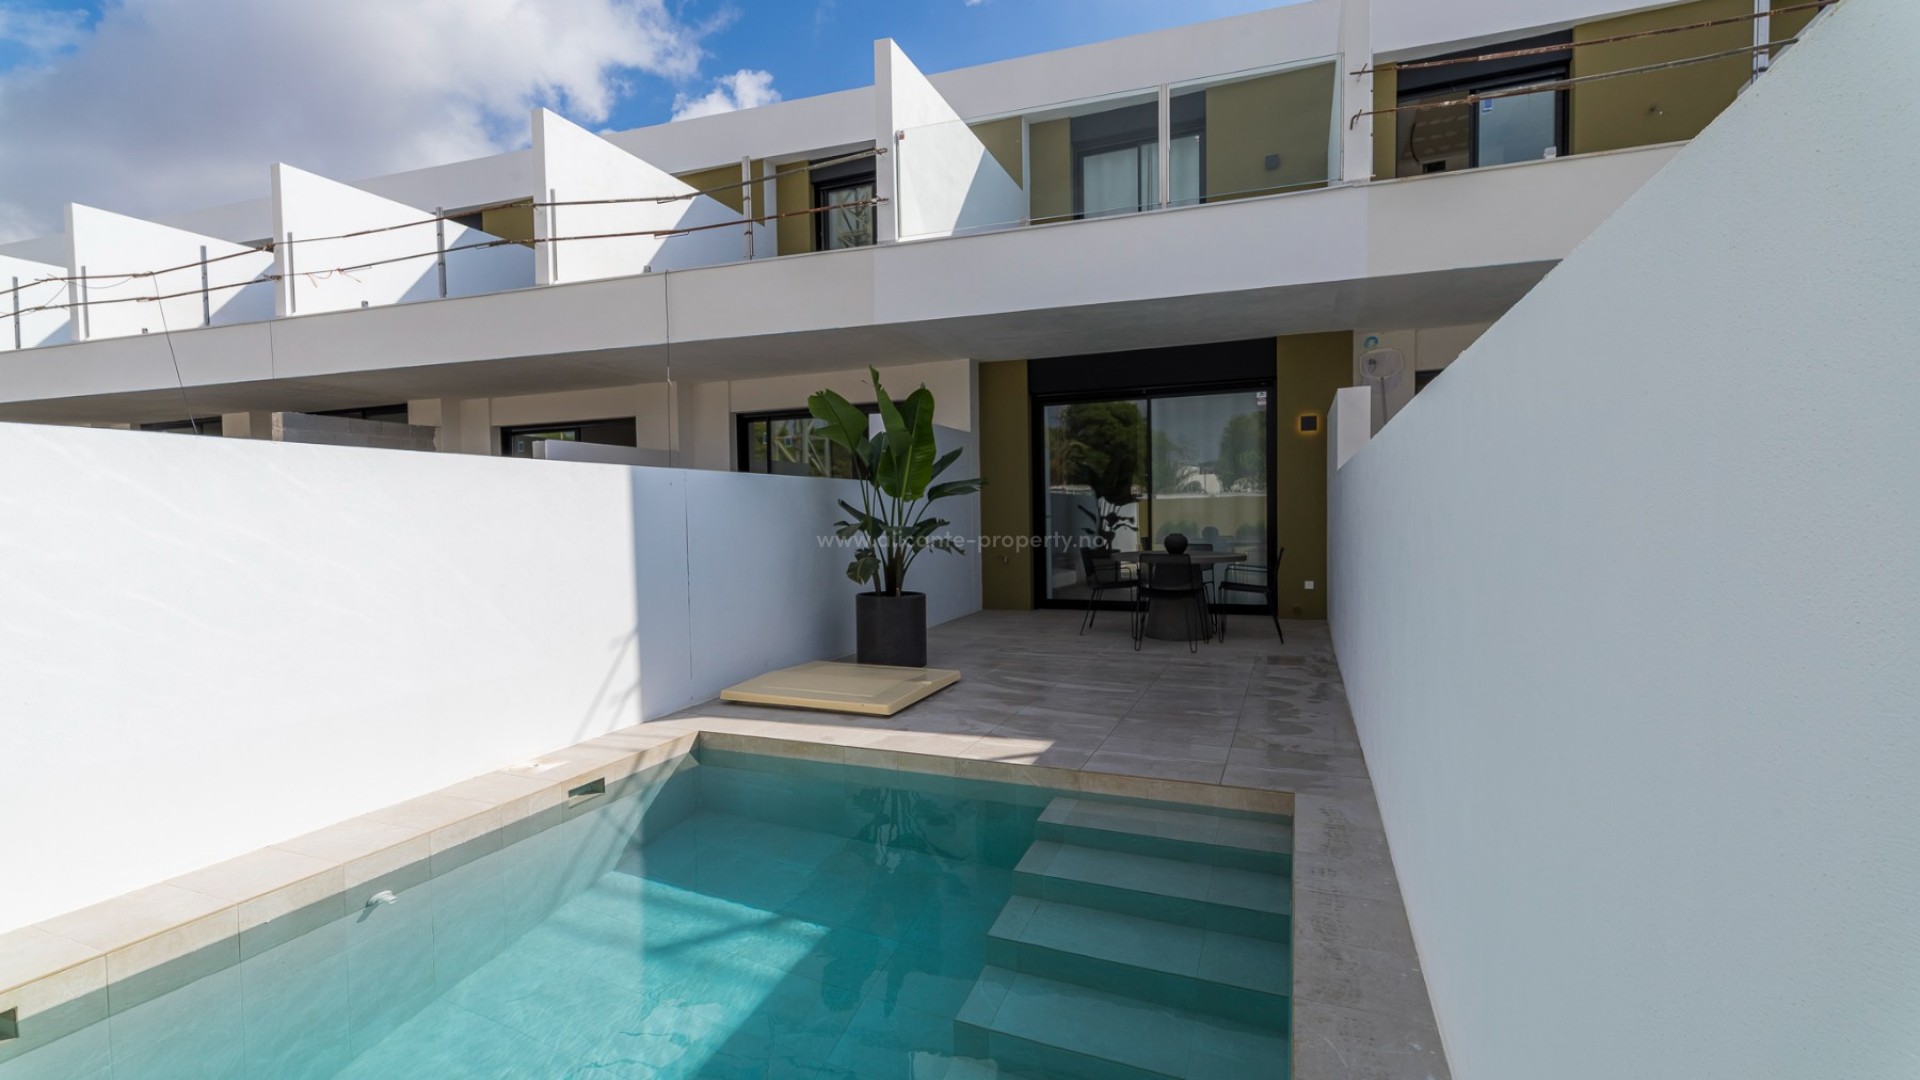 Eksklusive boligkomplekset med rekkehus i Pilar de La Horodada, Alicante, 2 eller 3 soverom med hage og stor terrasse. Ligger nær 5 golfbaner, 